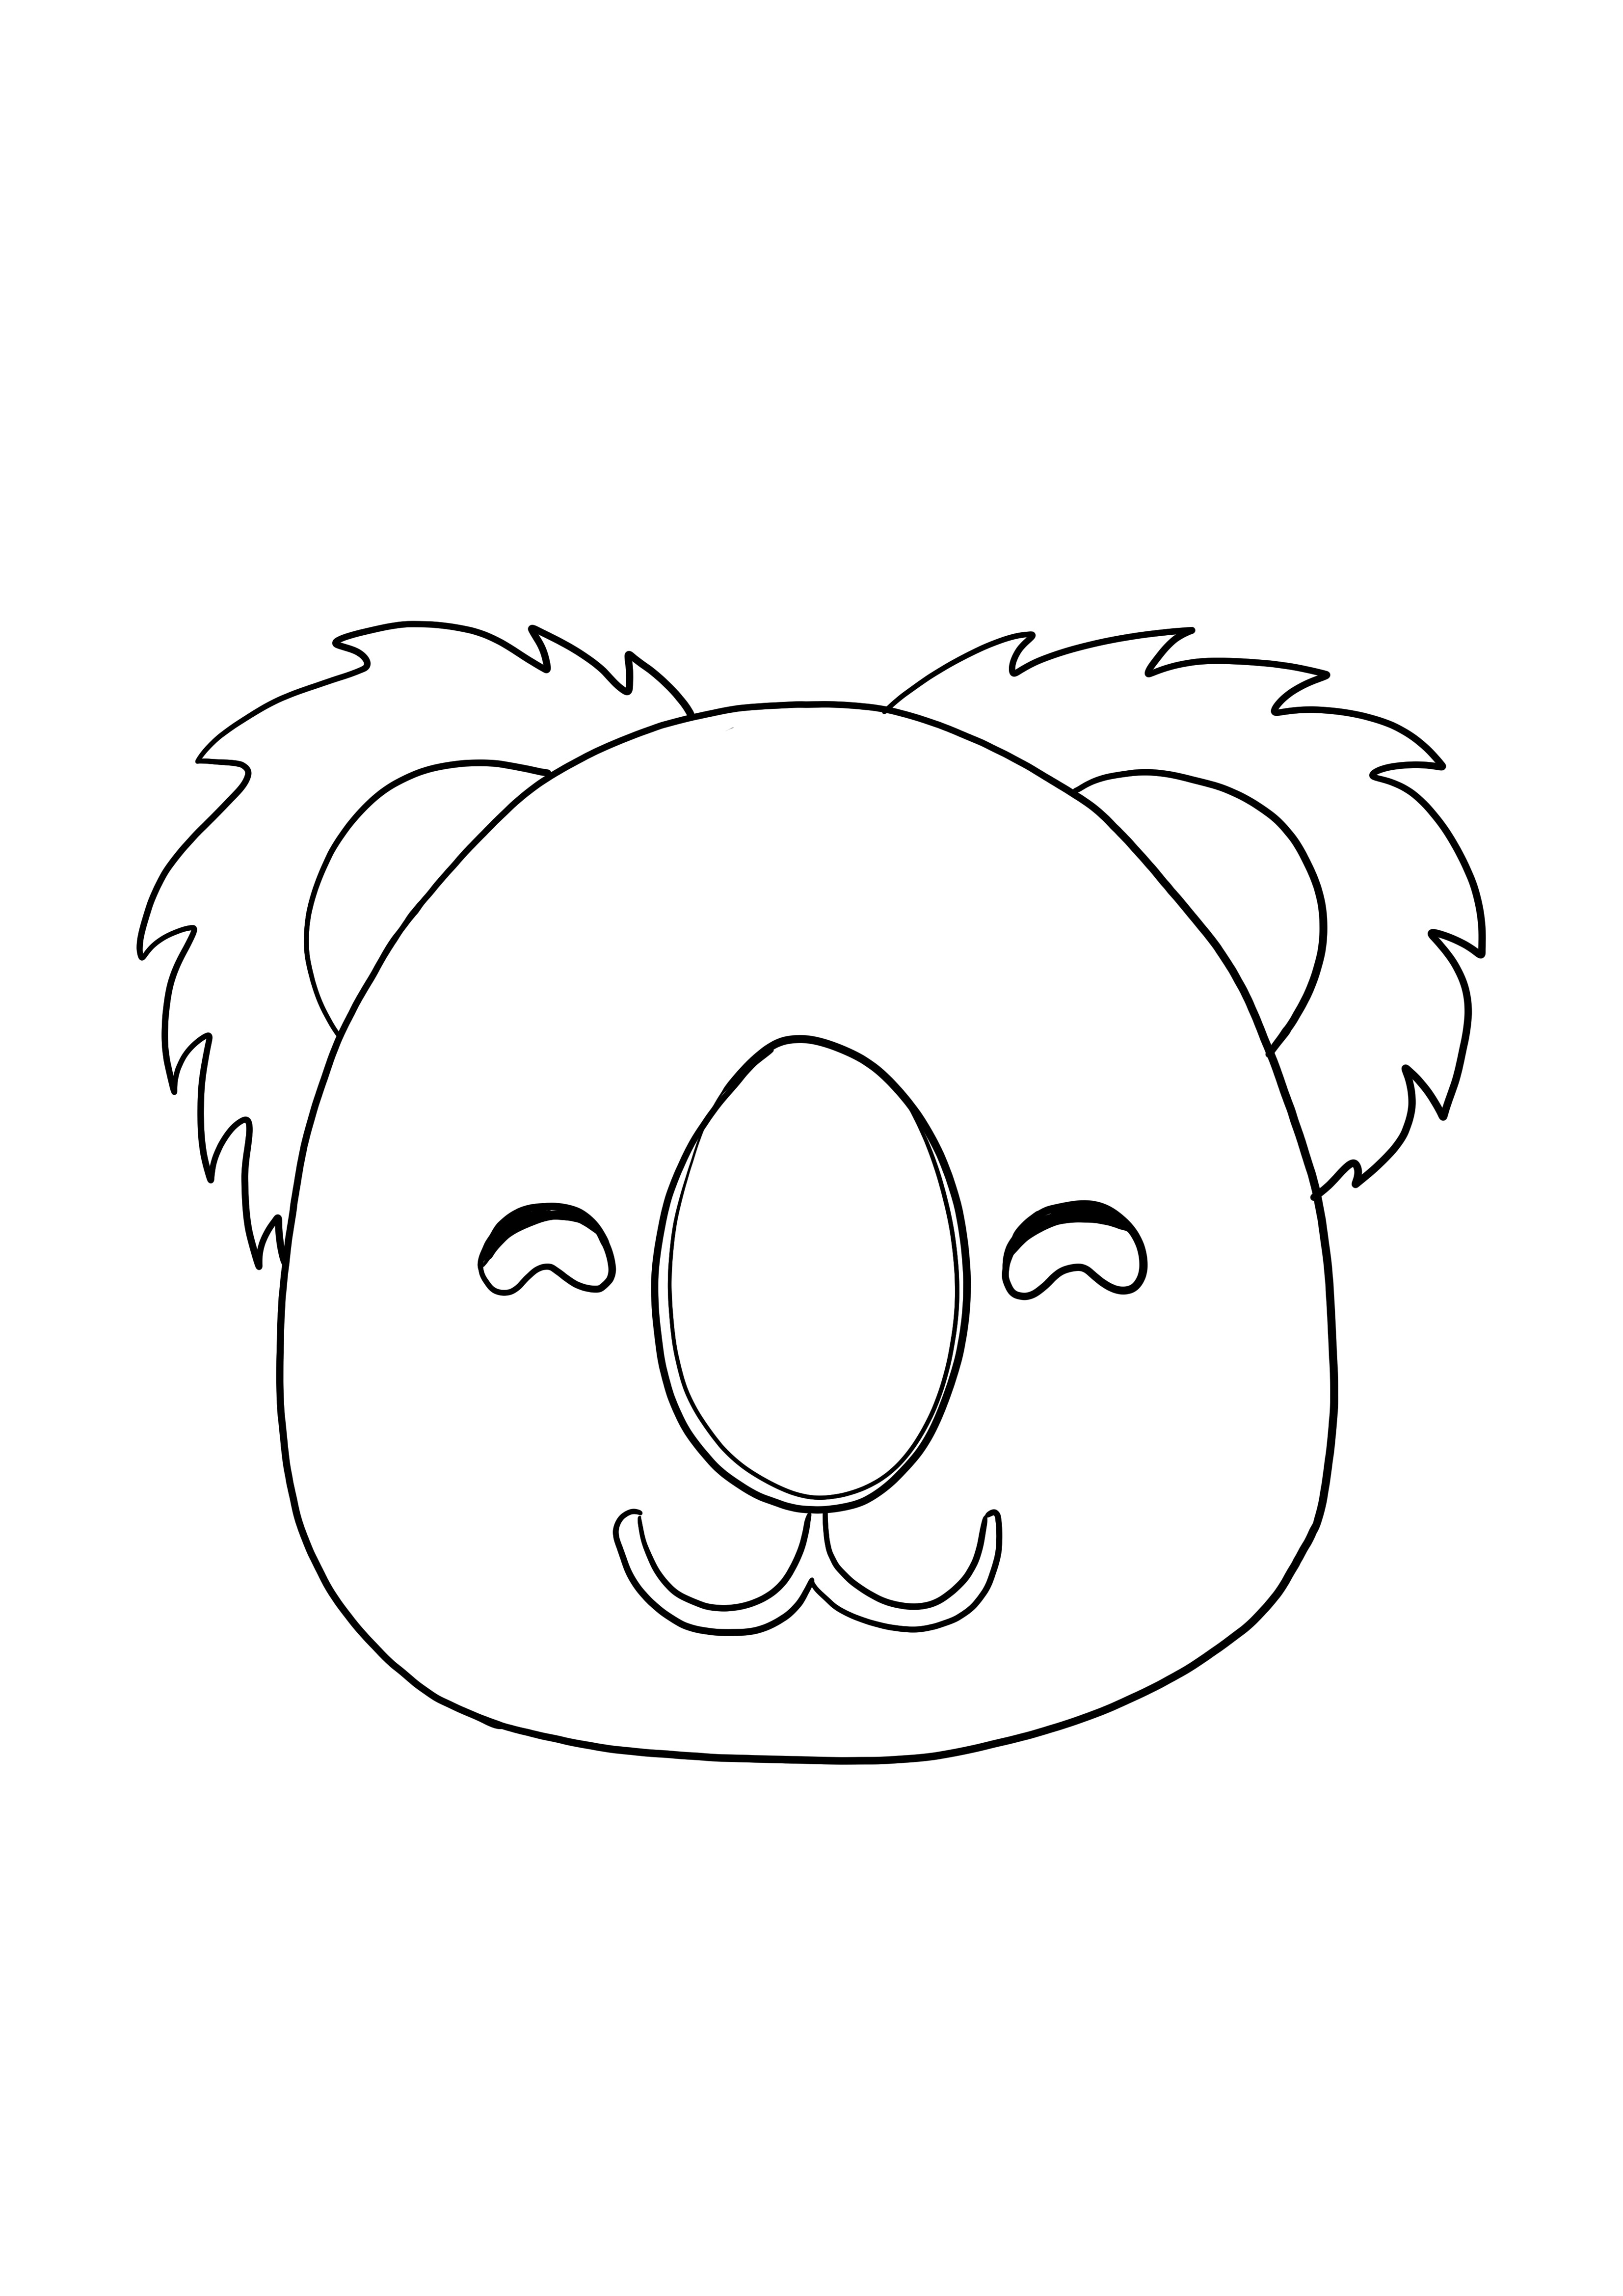 Image de coloration souriante du visage de Koala pour les enfants gratuitement